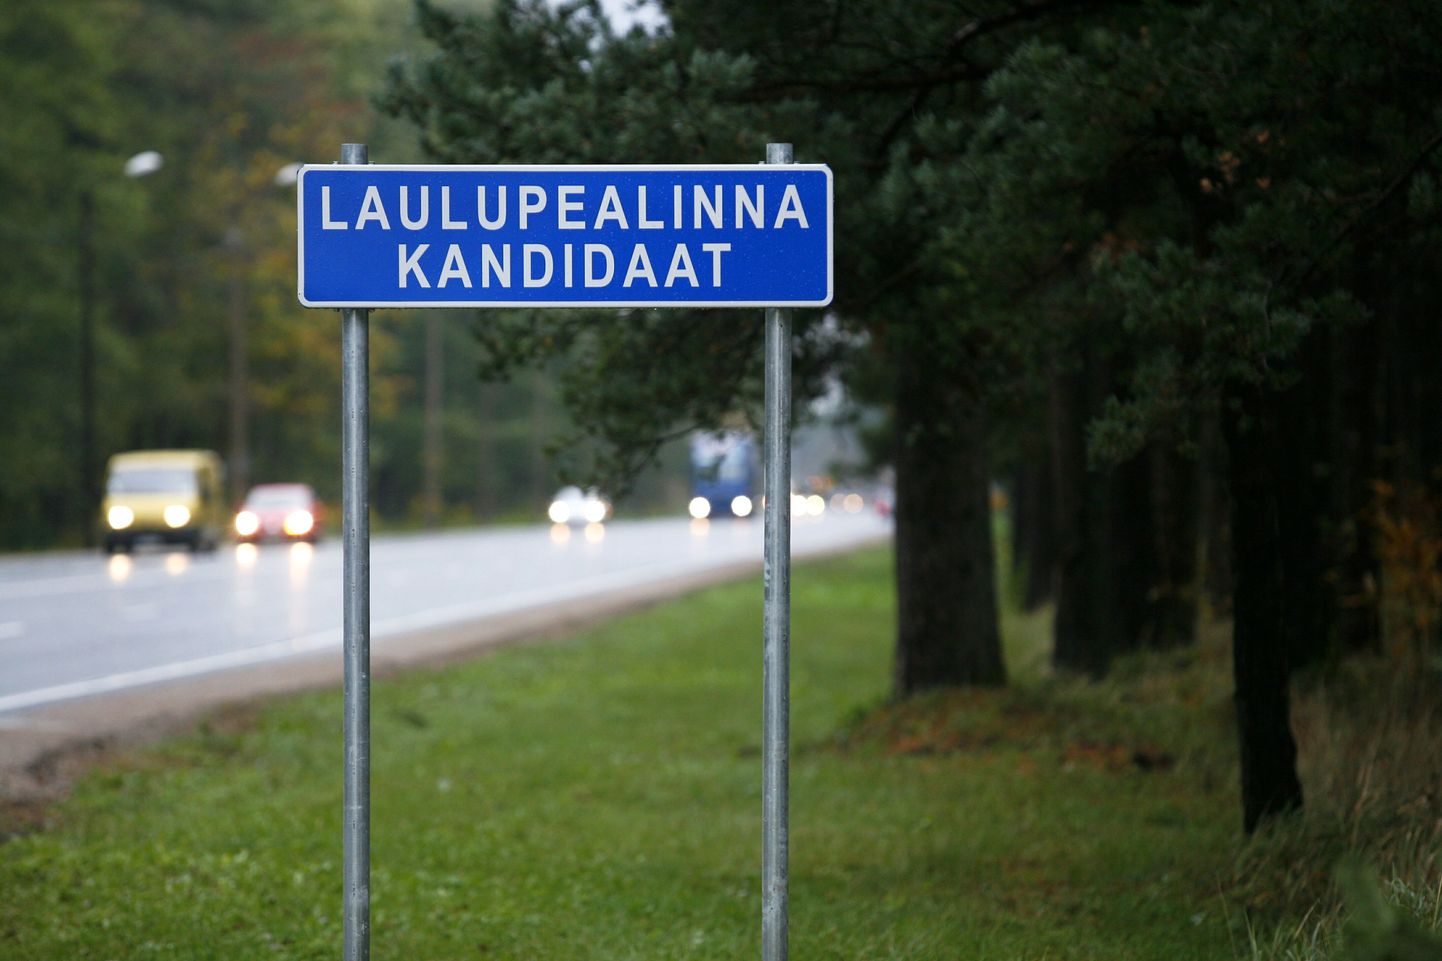 Laulupealinna kandidaadiks on jäänud veel Kärdla ja Kohtla-Järve. Võitja selgub täna õhtul. Foto on illustreeriv.